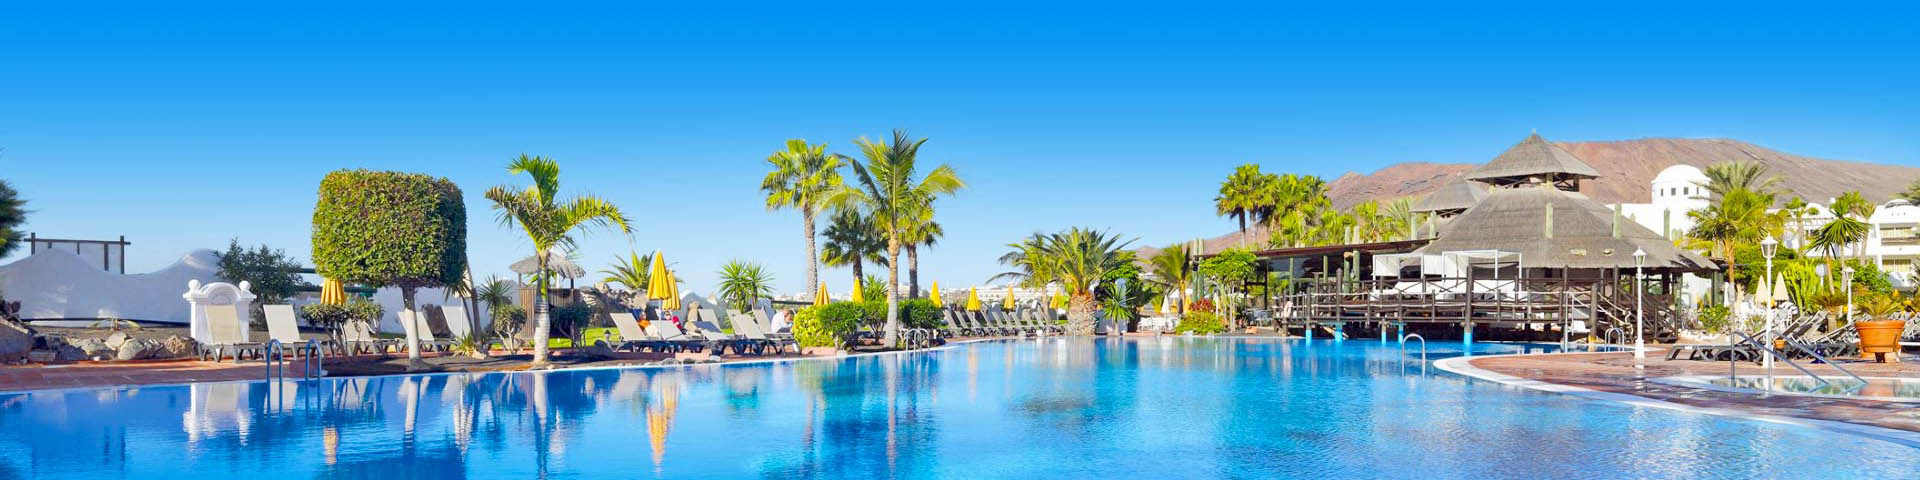 All Inclusive resort met groot zwembad, ligbedjes en palmbomen op Lanzarote